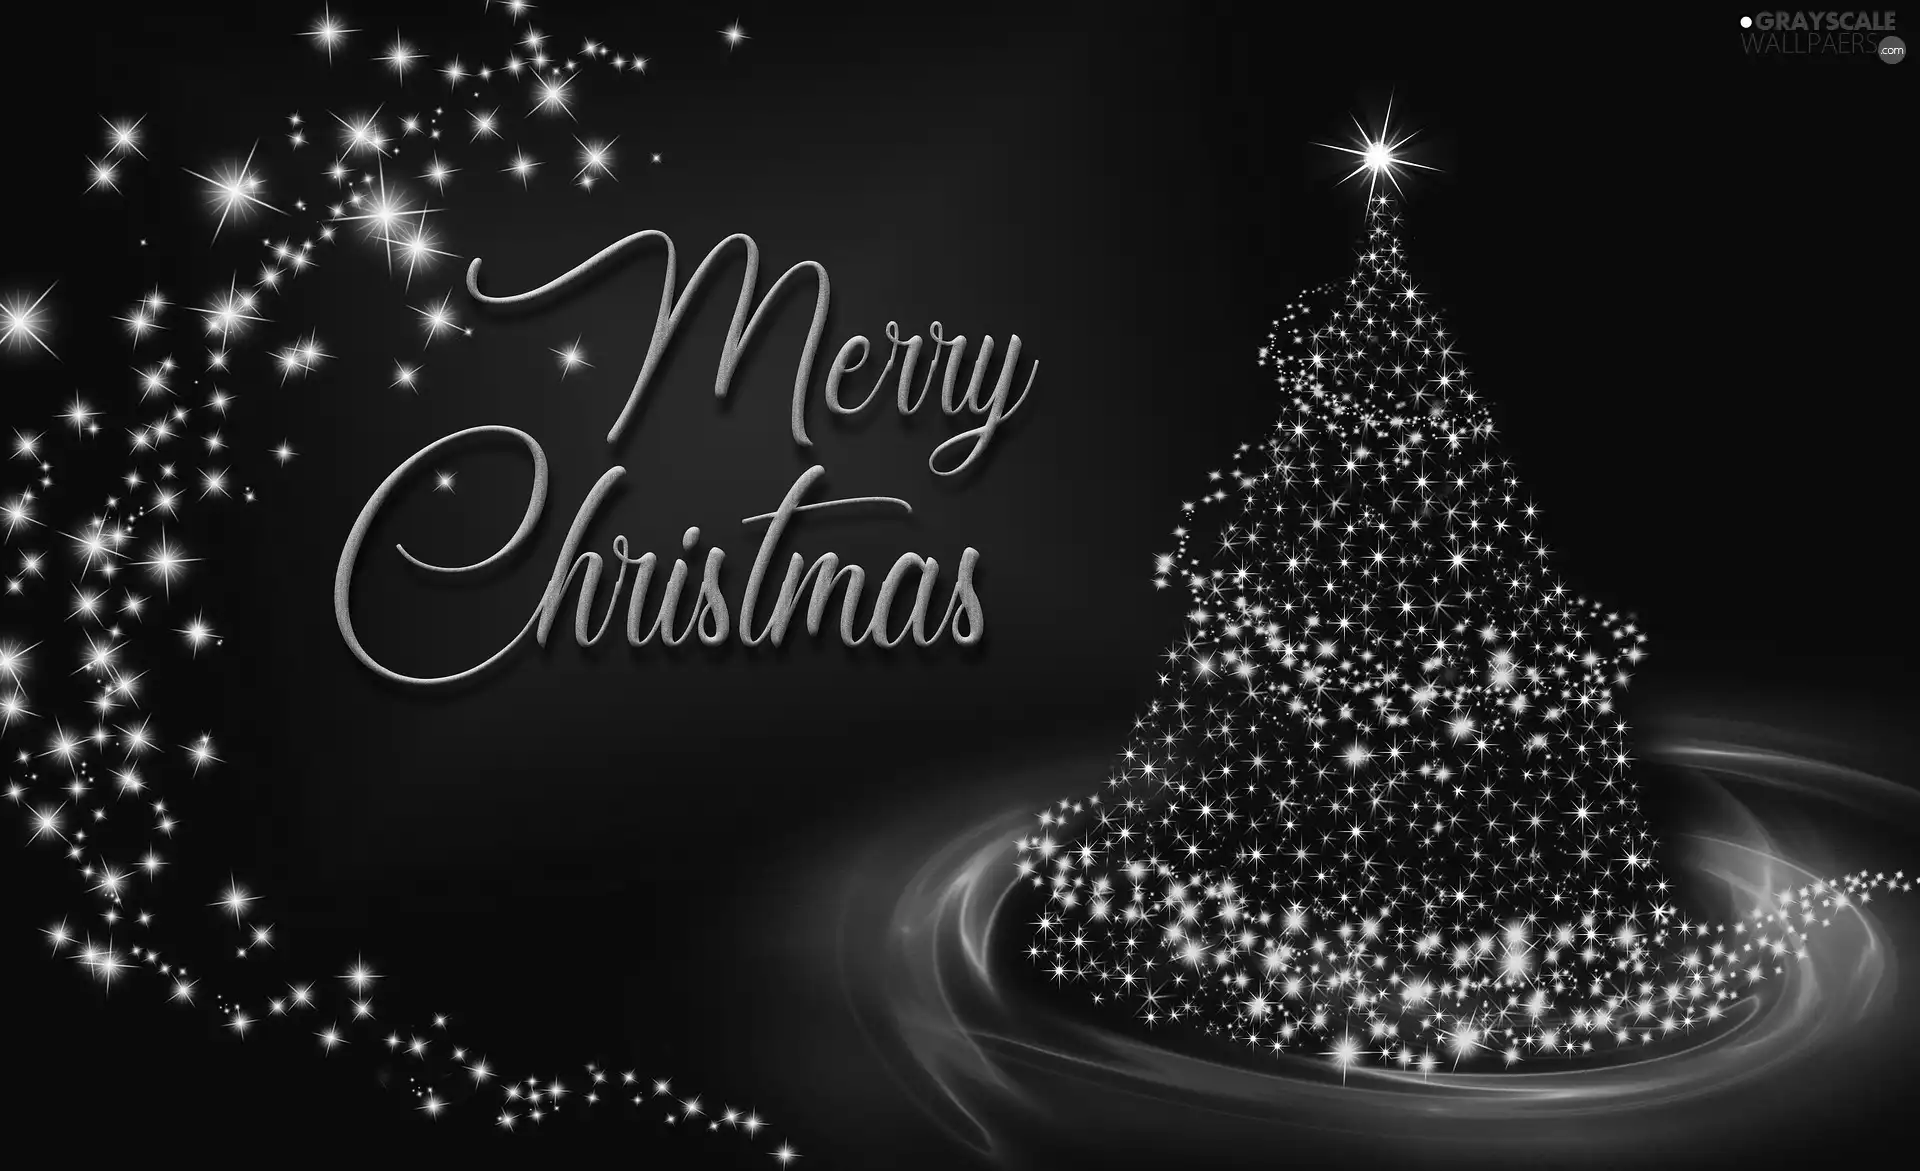 Stars, Christmas, ##, graphics, text, christmas tree